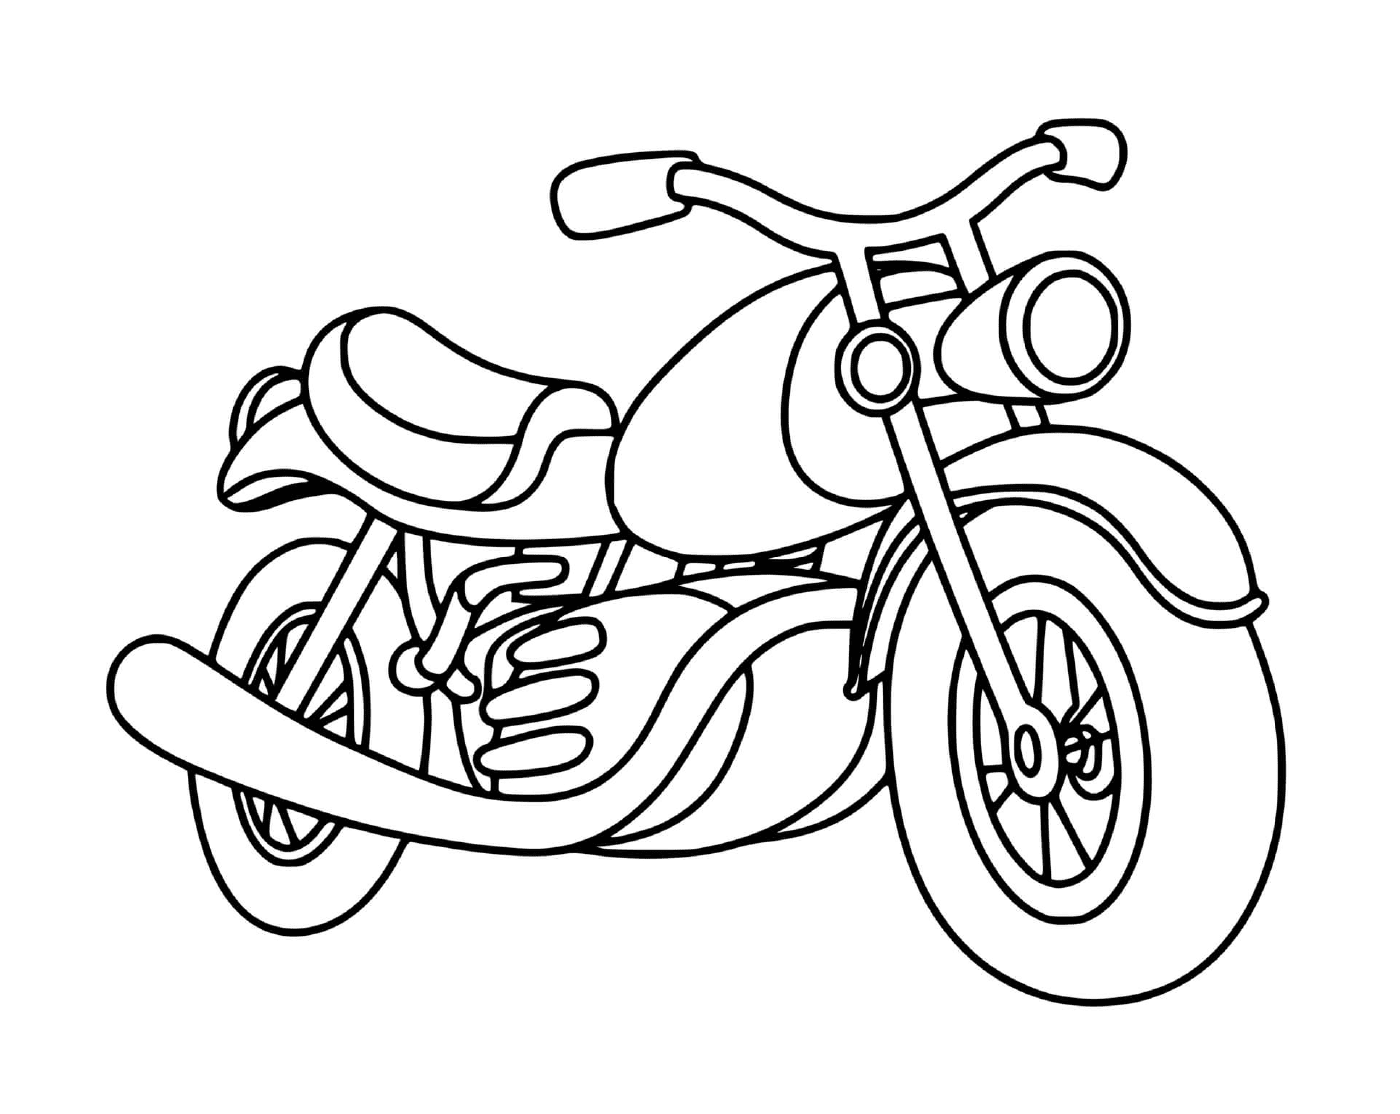  Motocicletta classica posizionata a terra 